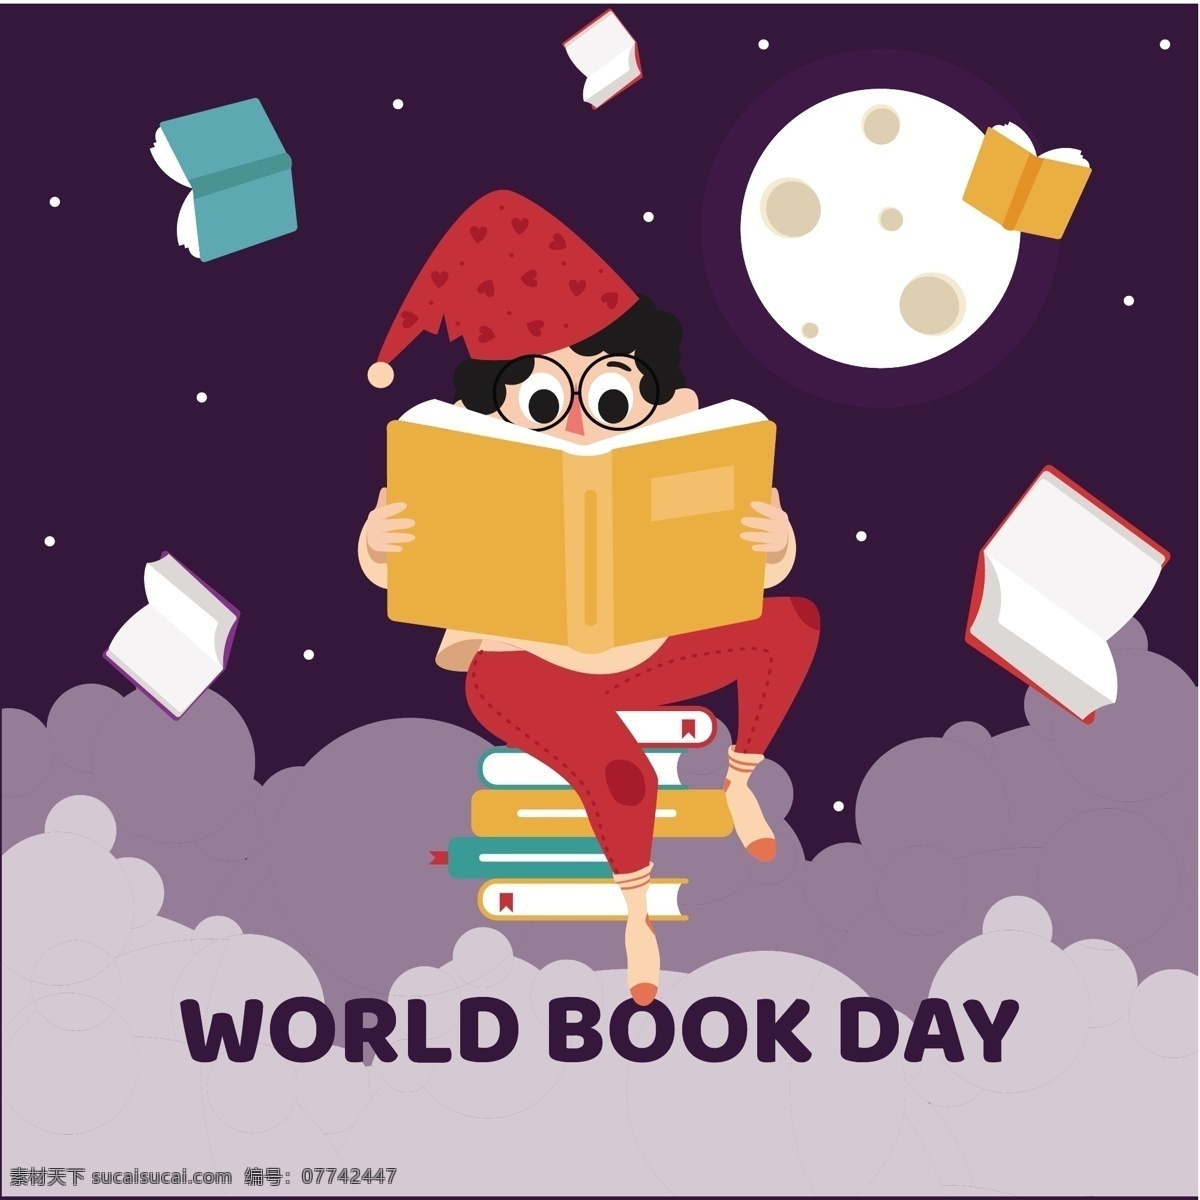 清新 可爱 儿童 阅读 书本 世界 读书 日 月球 星星 圣诞帽 节日元素 深紫色底纹 云堆 世界读书日 紫色英文